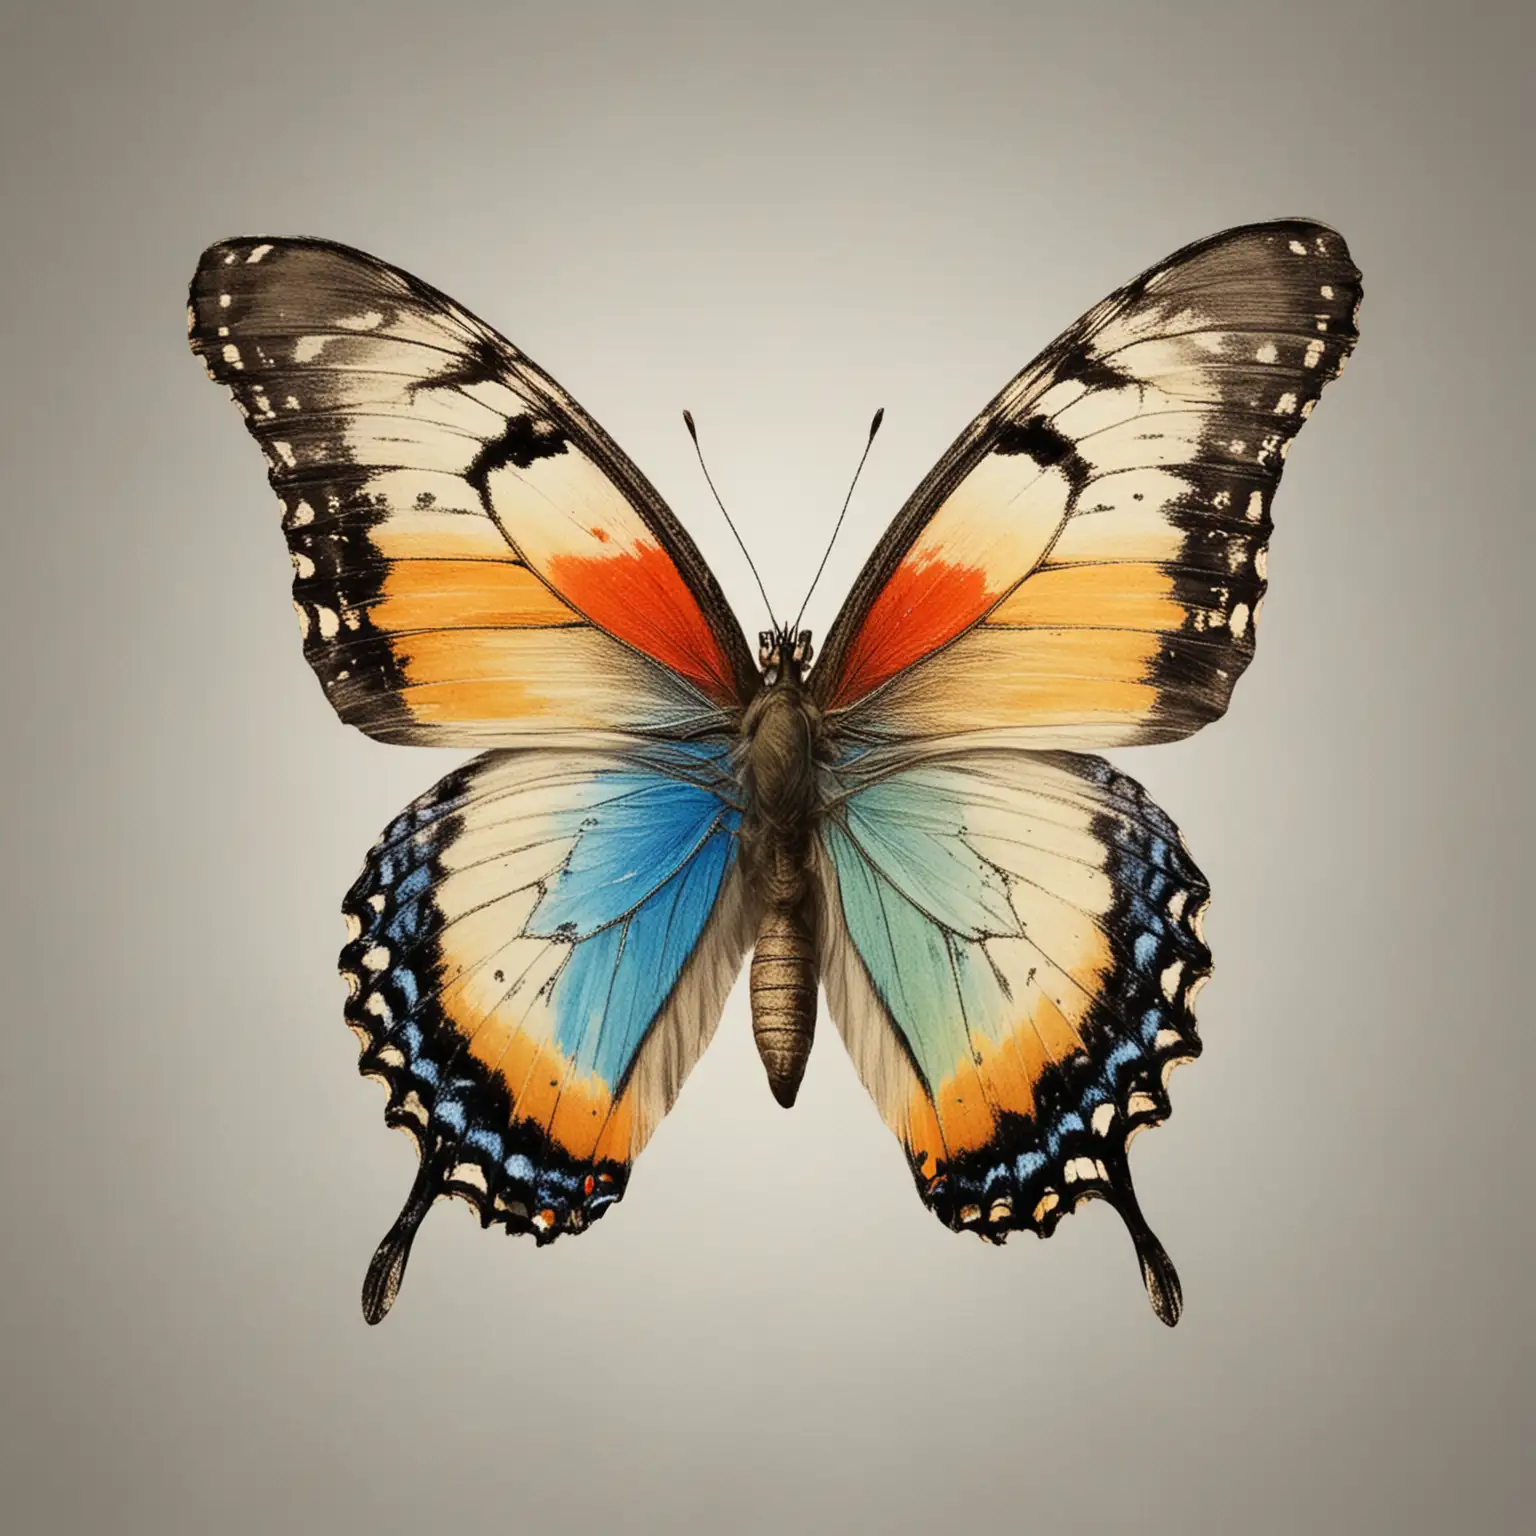 representa una imagen con fondo. neutro con la mitad de una mariposa colorida y la otra mitad grisácea